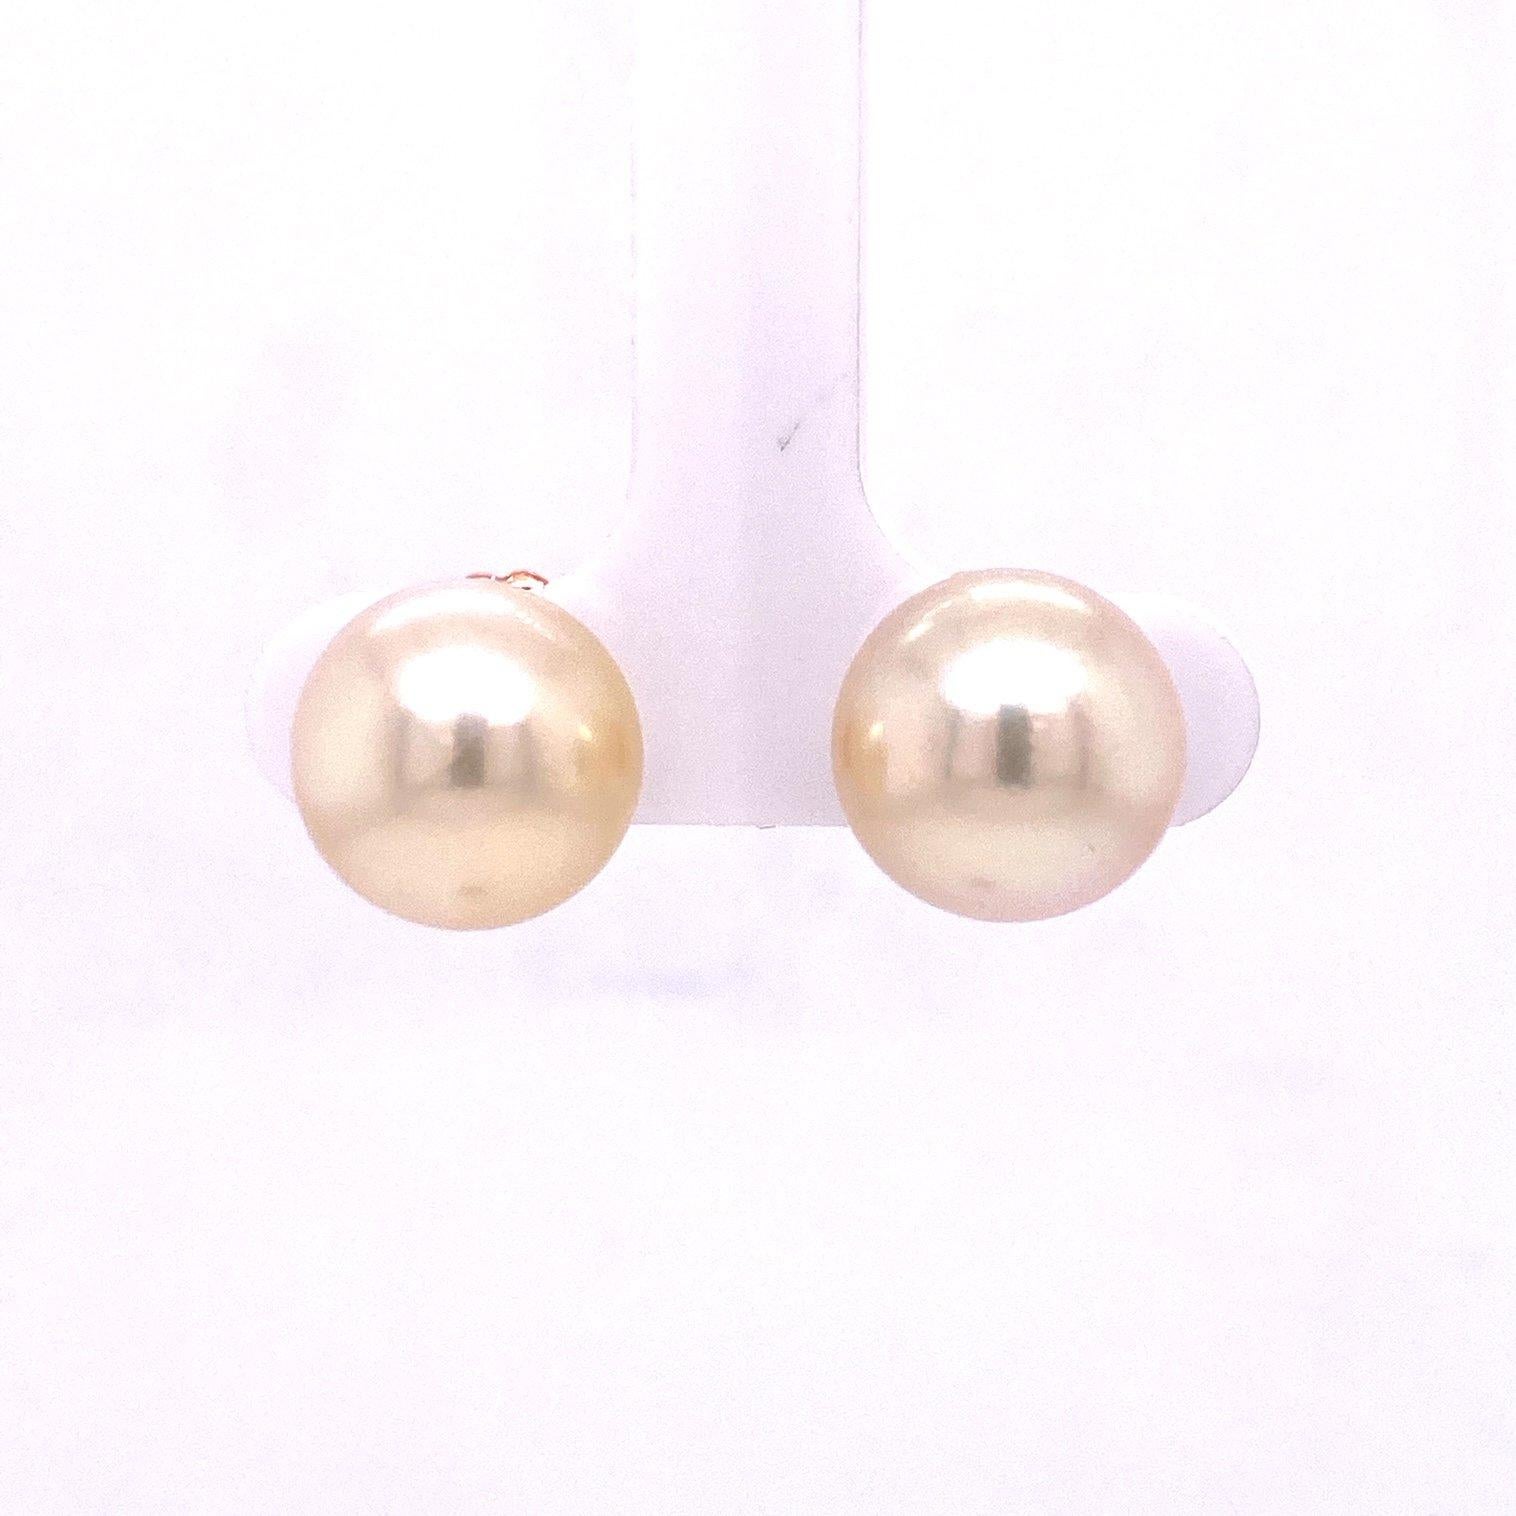 Une paire de clous de perles blanches des mers du Sud de 11-12 mm, avec une paire de jackets en or jaune 18k sertis de deux quartz jaunes en forme de poire, non traités, provenant du Brésil. Ces boucles d'oreilles ont été réalisées et conçues par